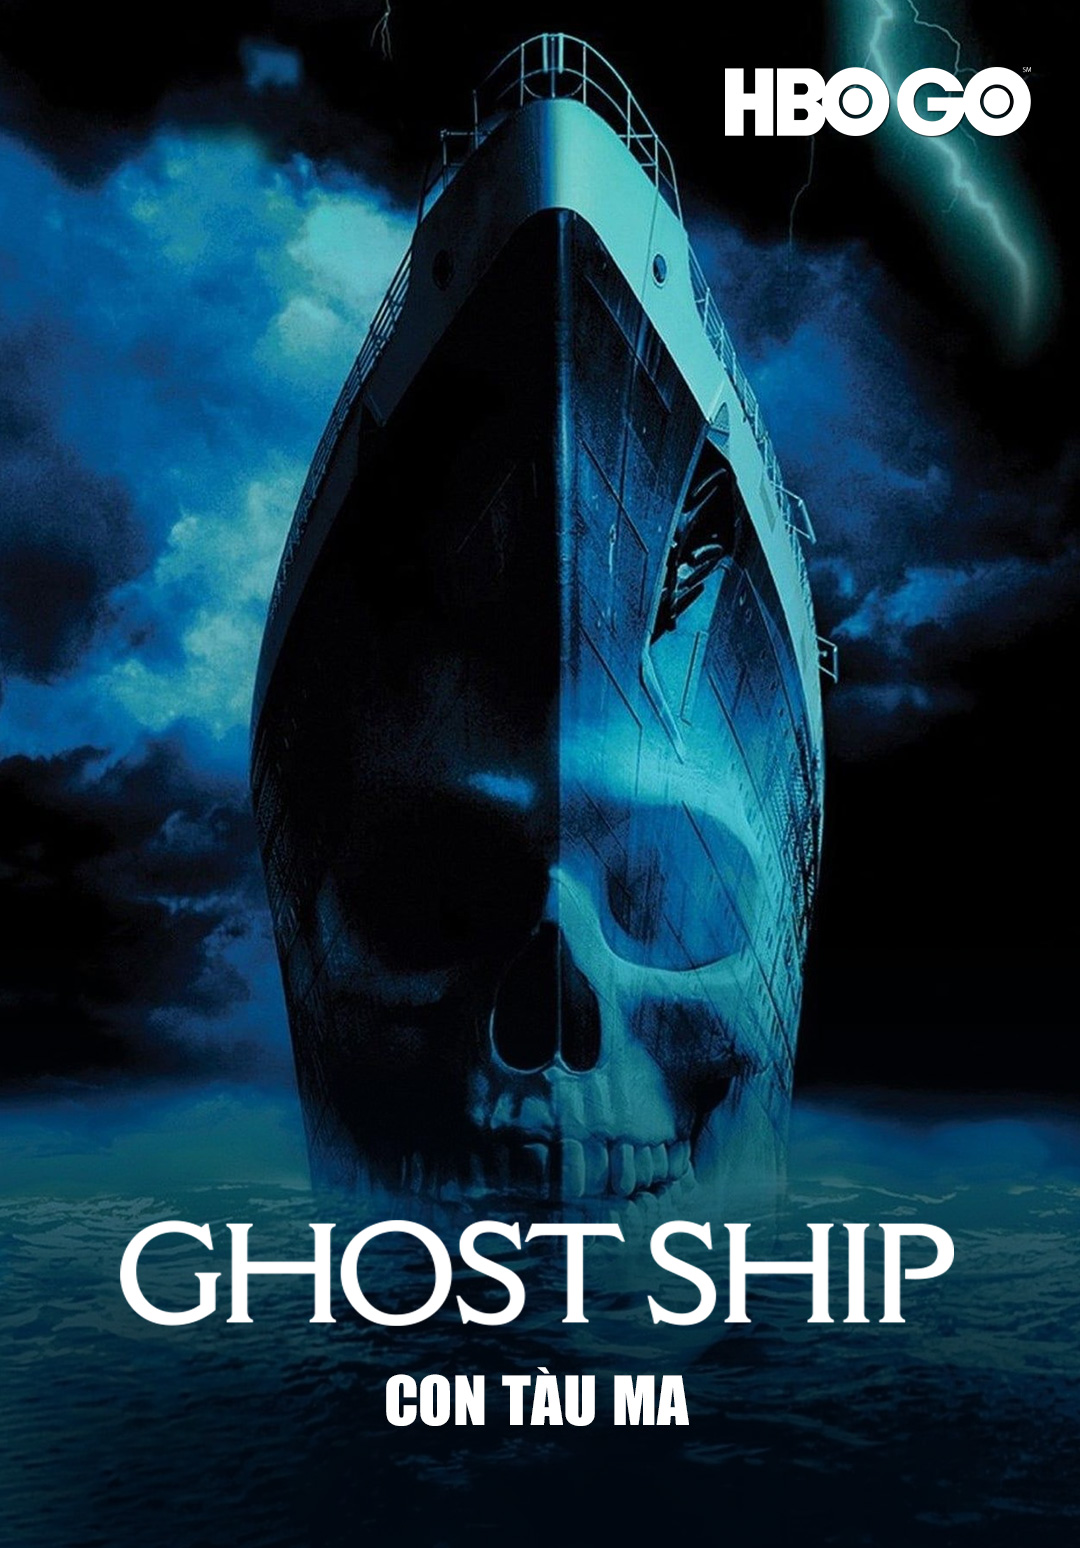 Ghost Ship (Con tàu ma)